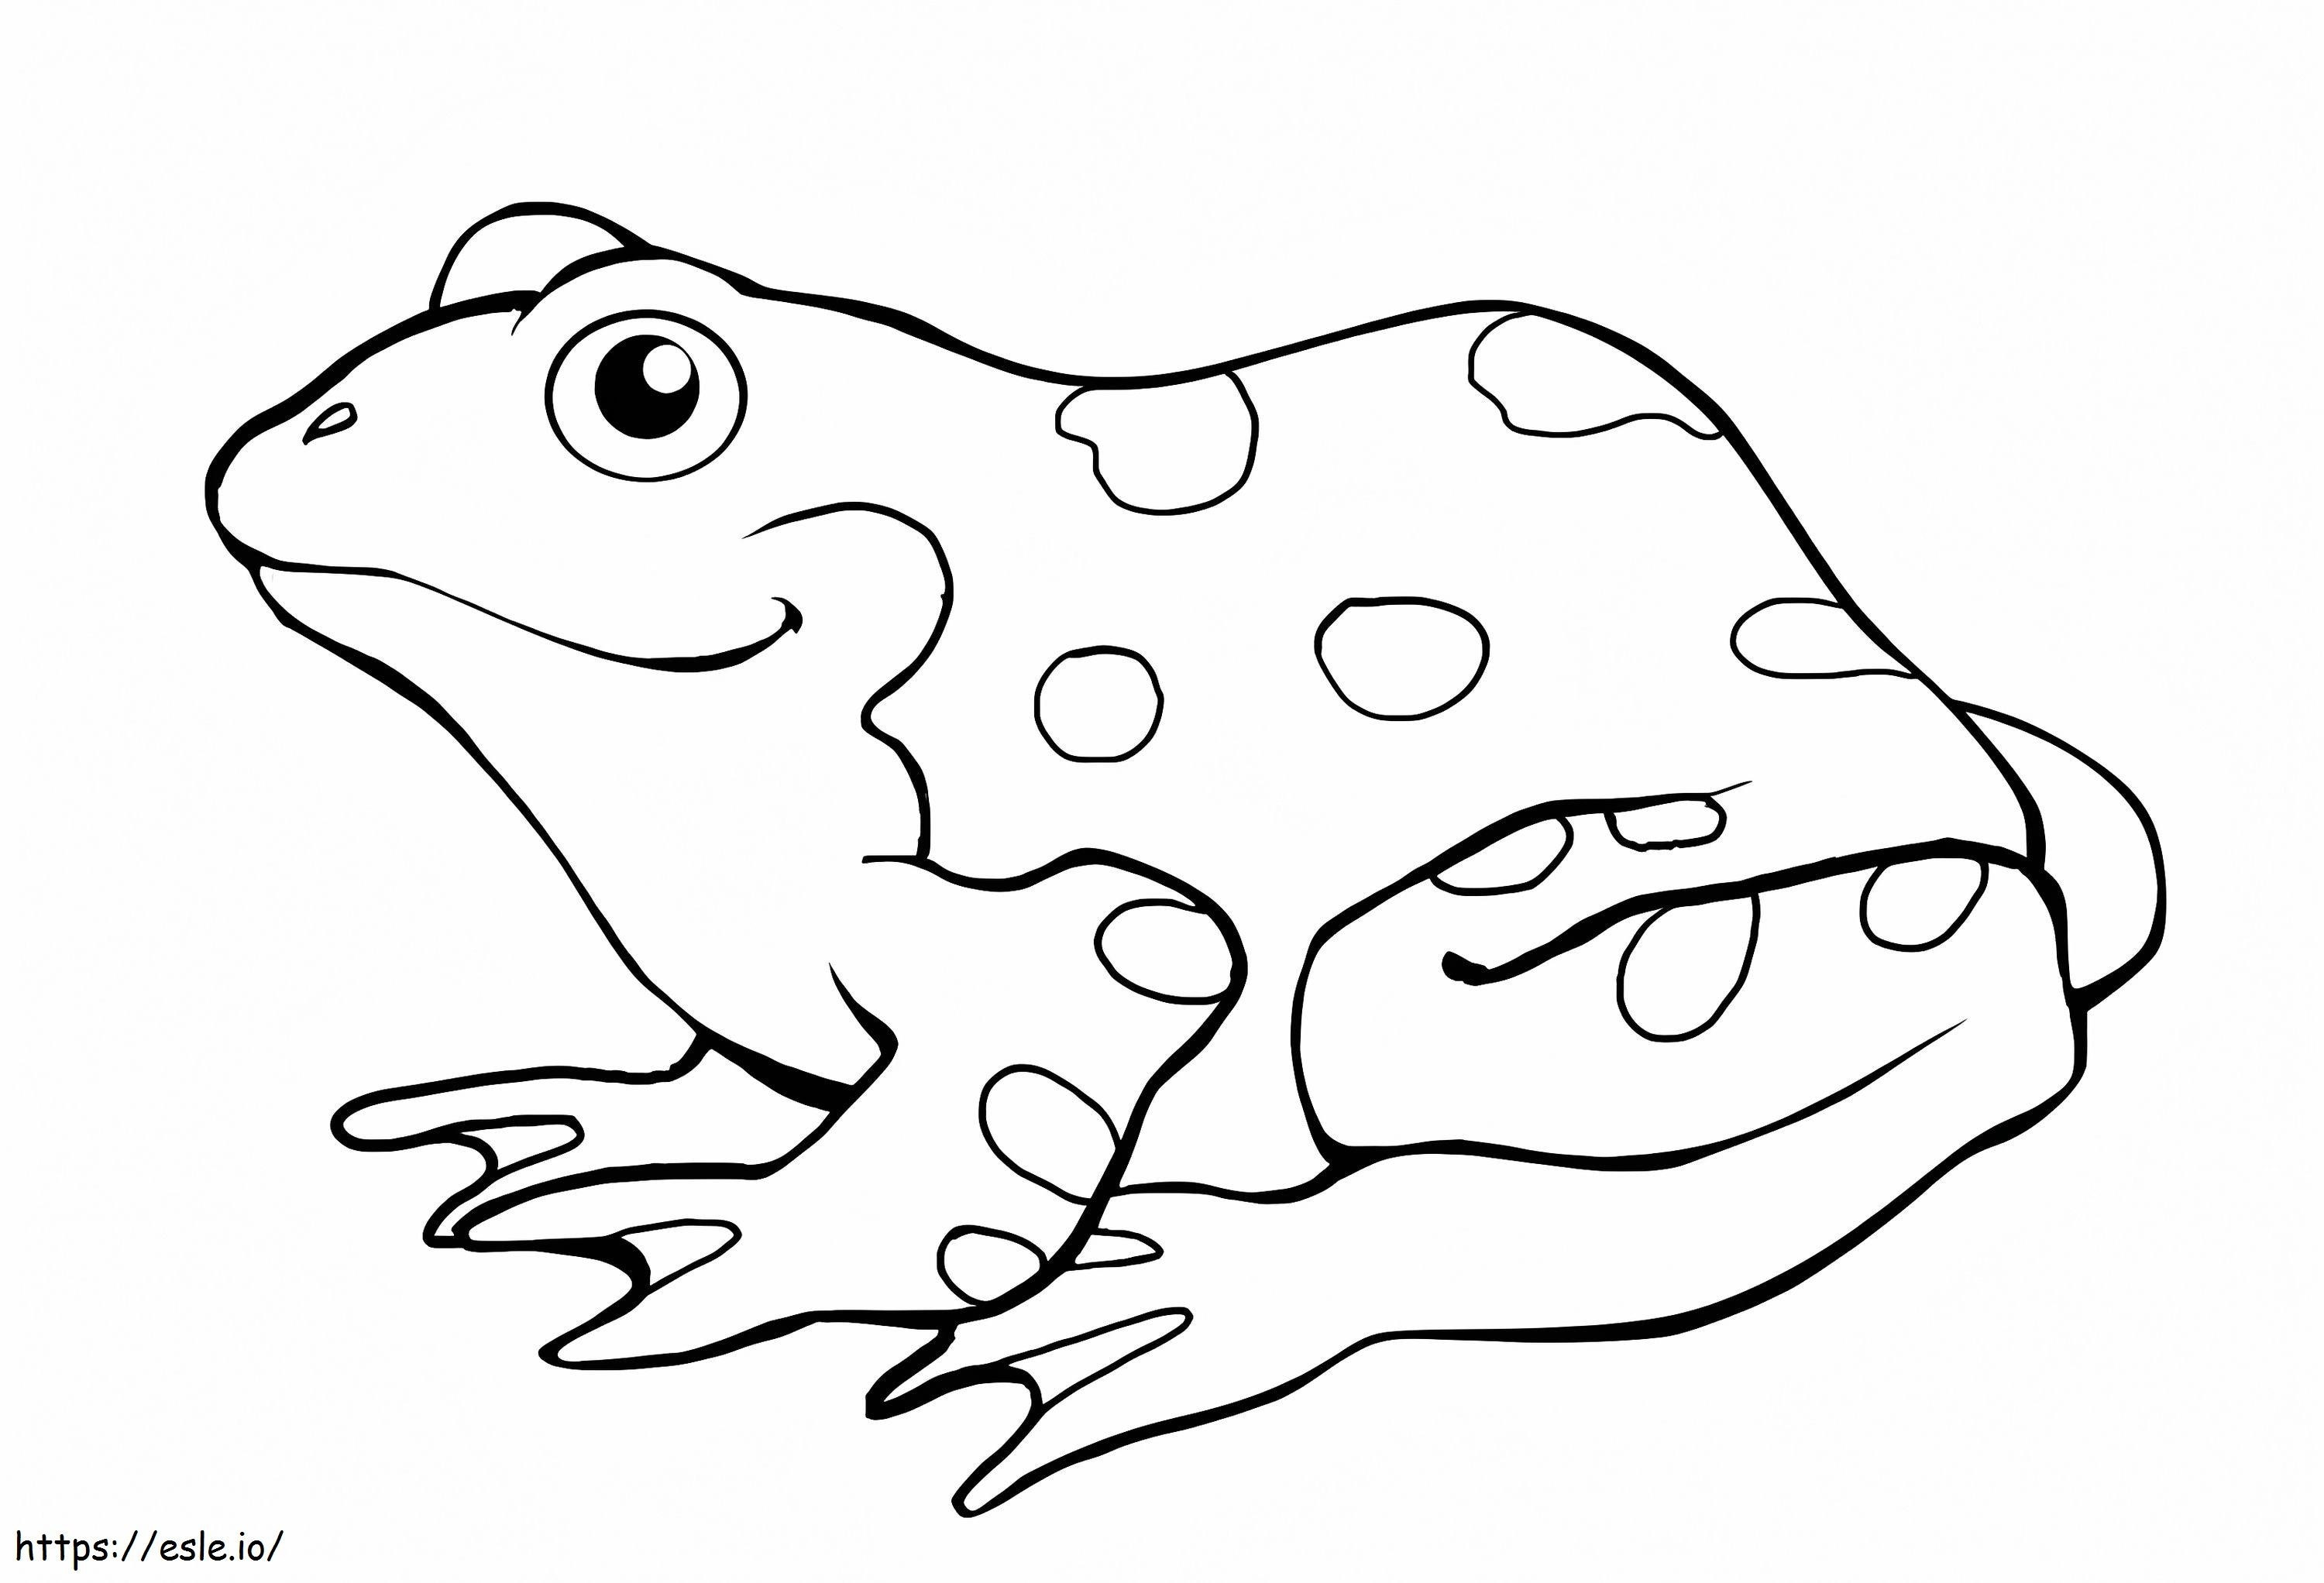 Prosta żaba kolorowanka